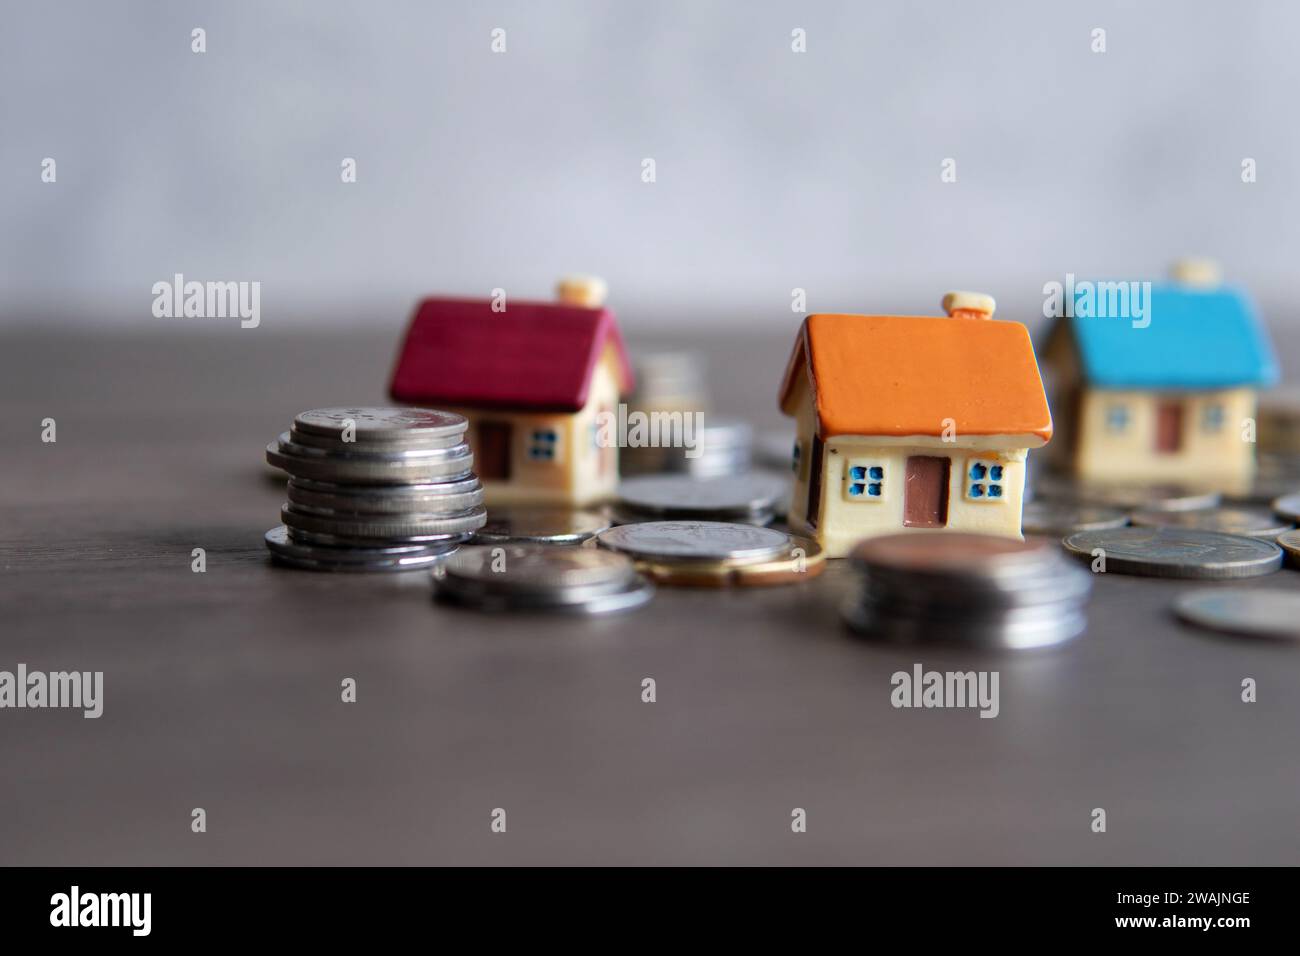 Immagine ravvicinata della casa dei giocattoli circondata da monete. Spazio di copia per il testo. Concetto di proprietà domestica. Foto Stock